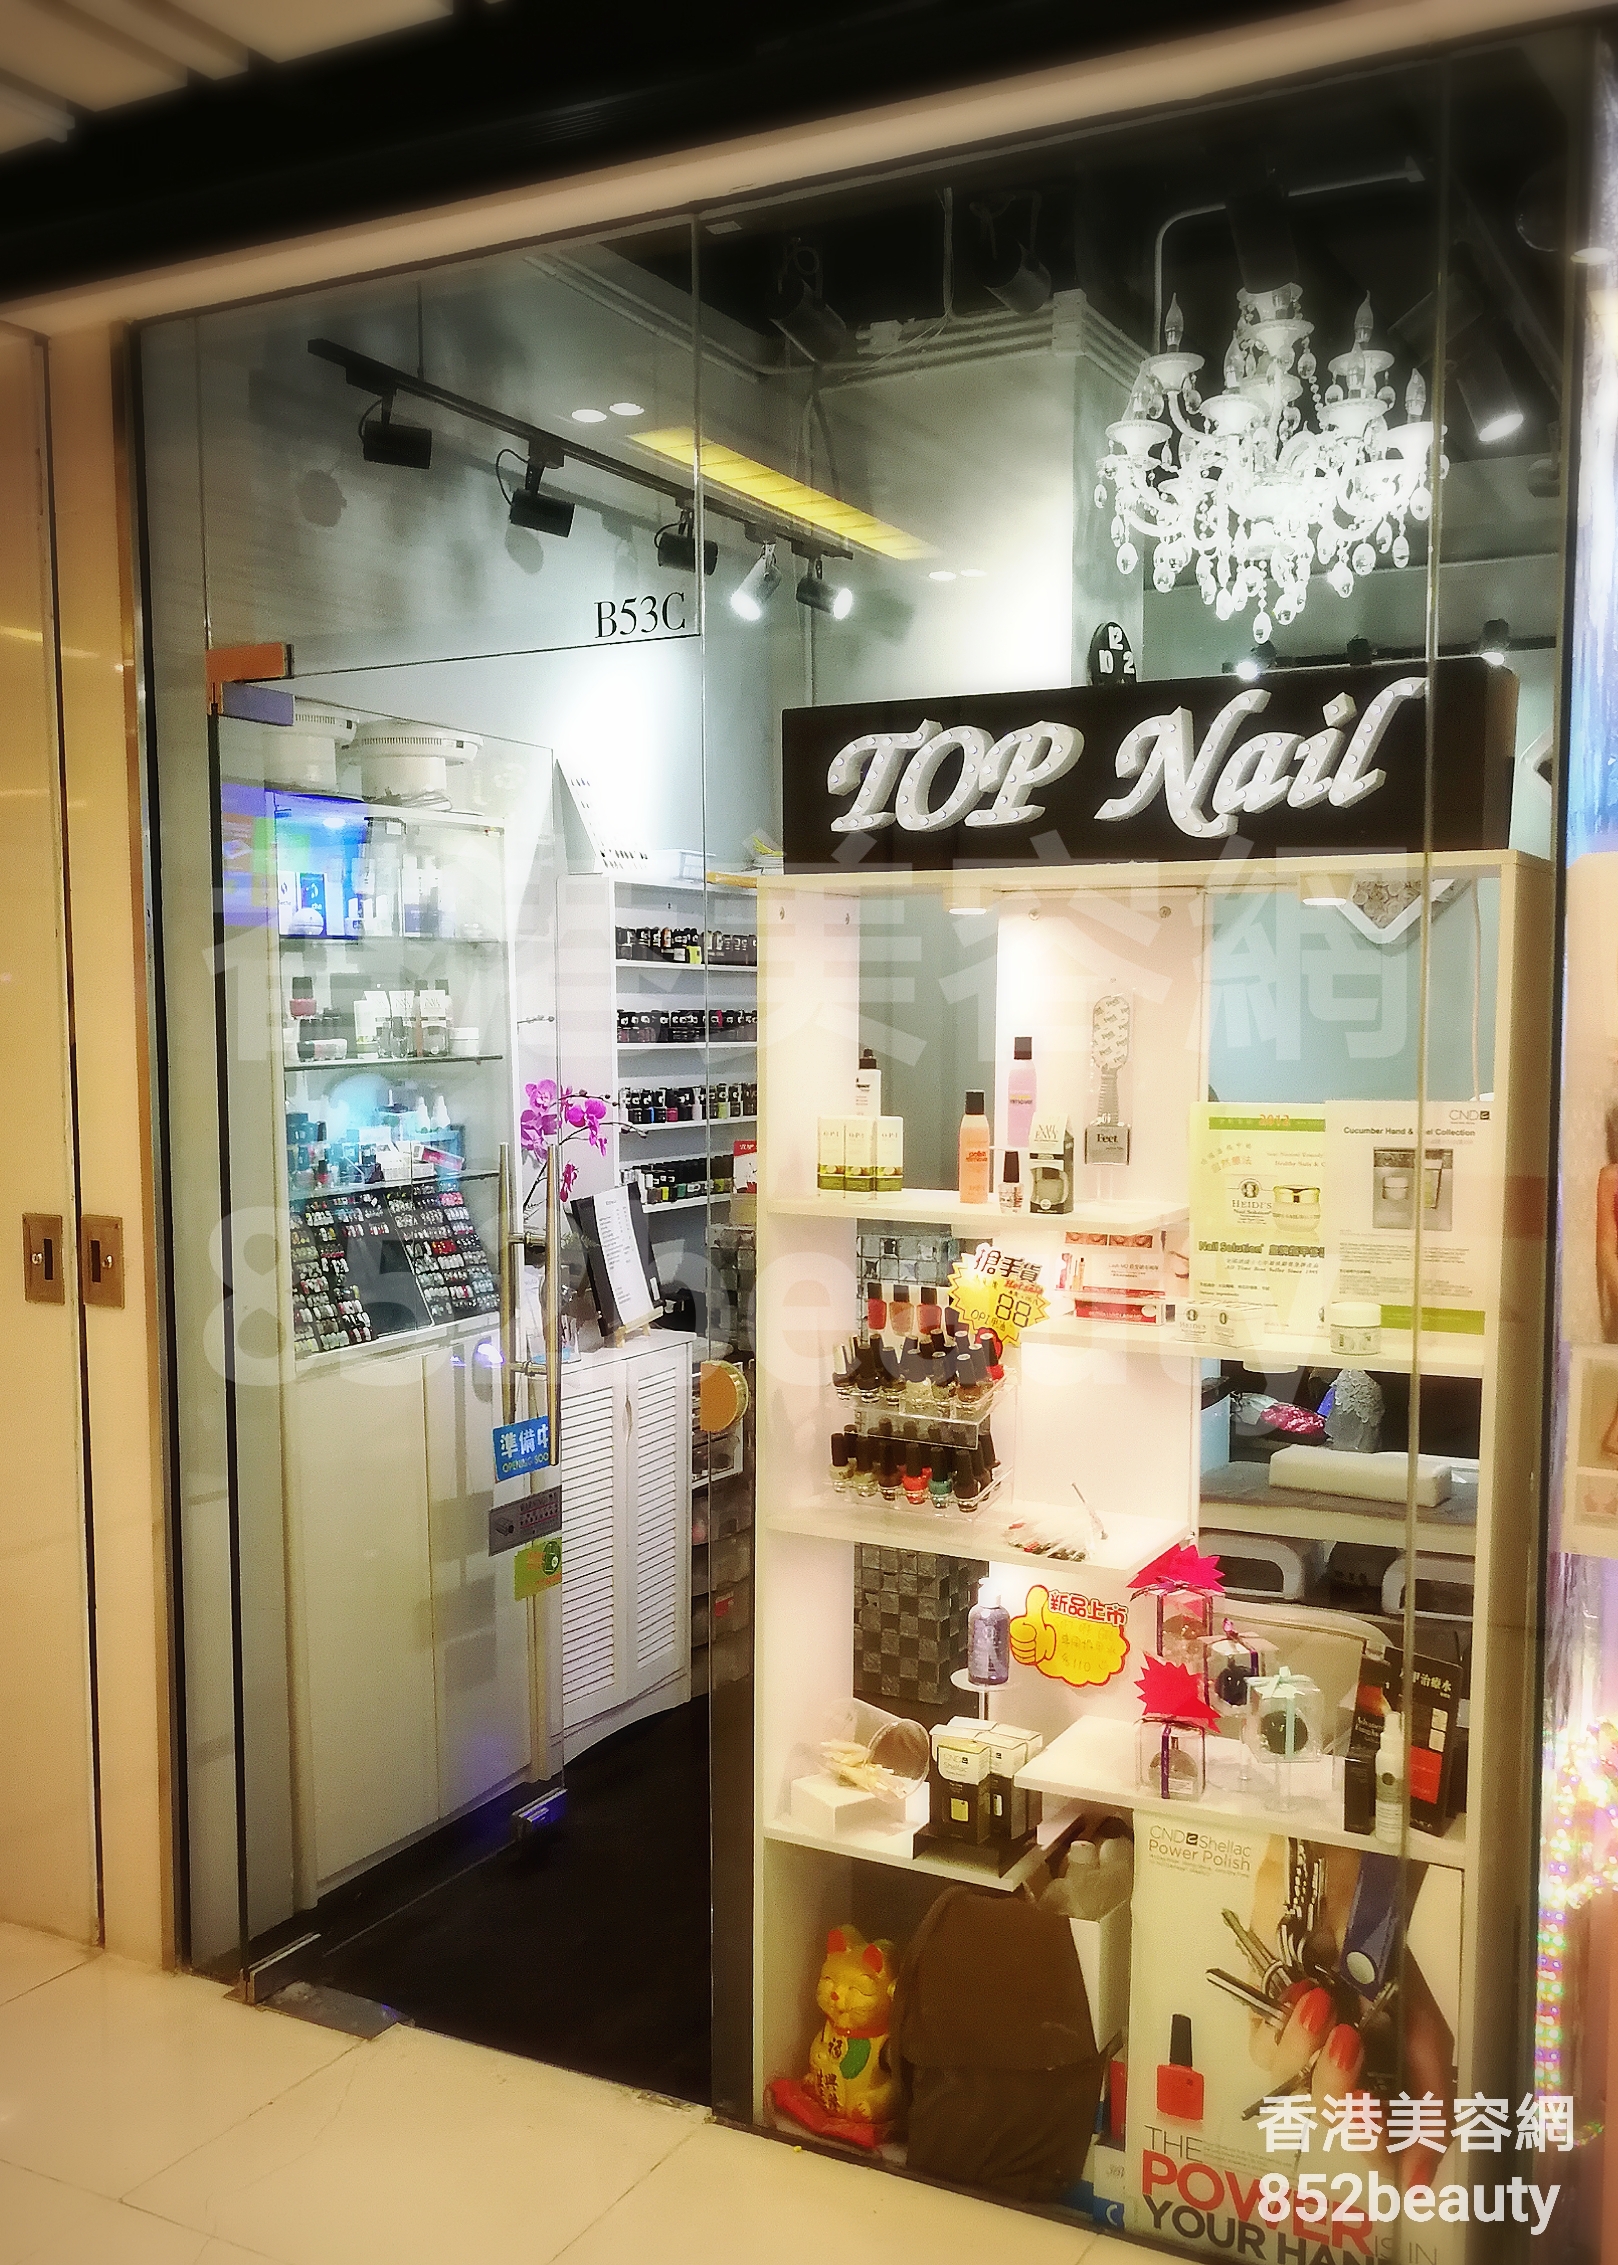 香港美容網 Hong Kong Beauty Salon 美容院 / 美容師: TOP Nail